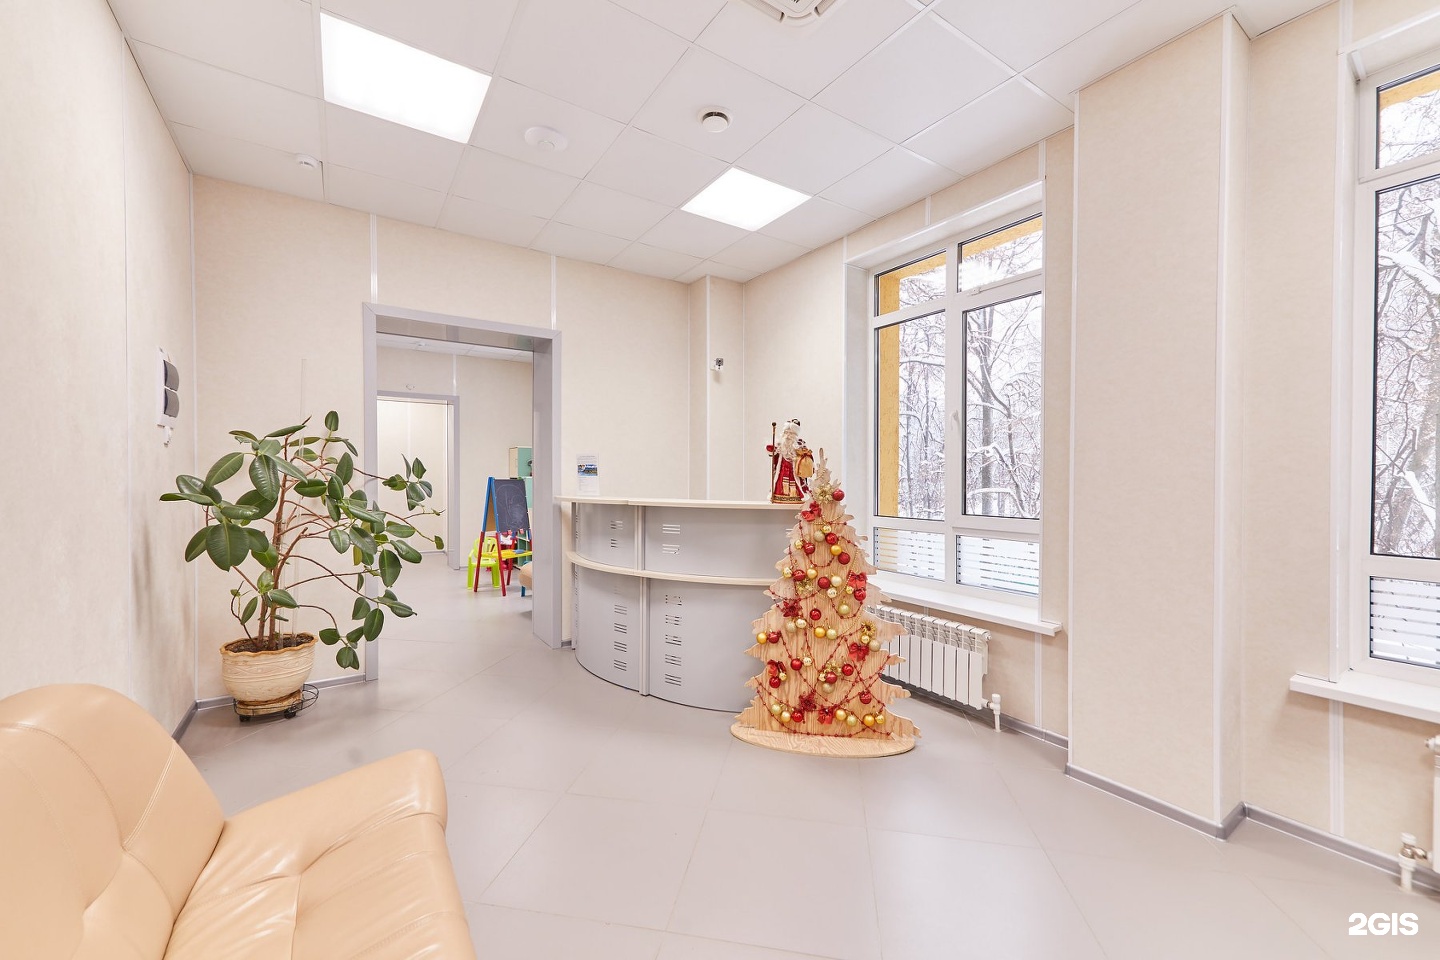 Медицинский центр 1 мая краснодар. Первый медицинский центр. Первый медицинский центр Брянск. Первый медицинский центр в Брянске на Рославльской. Транспортный переулок 1 медицинский центр.